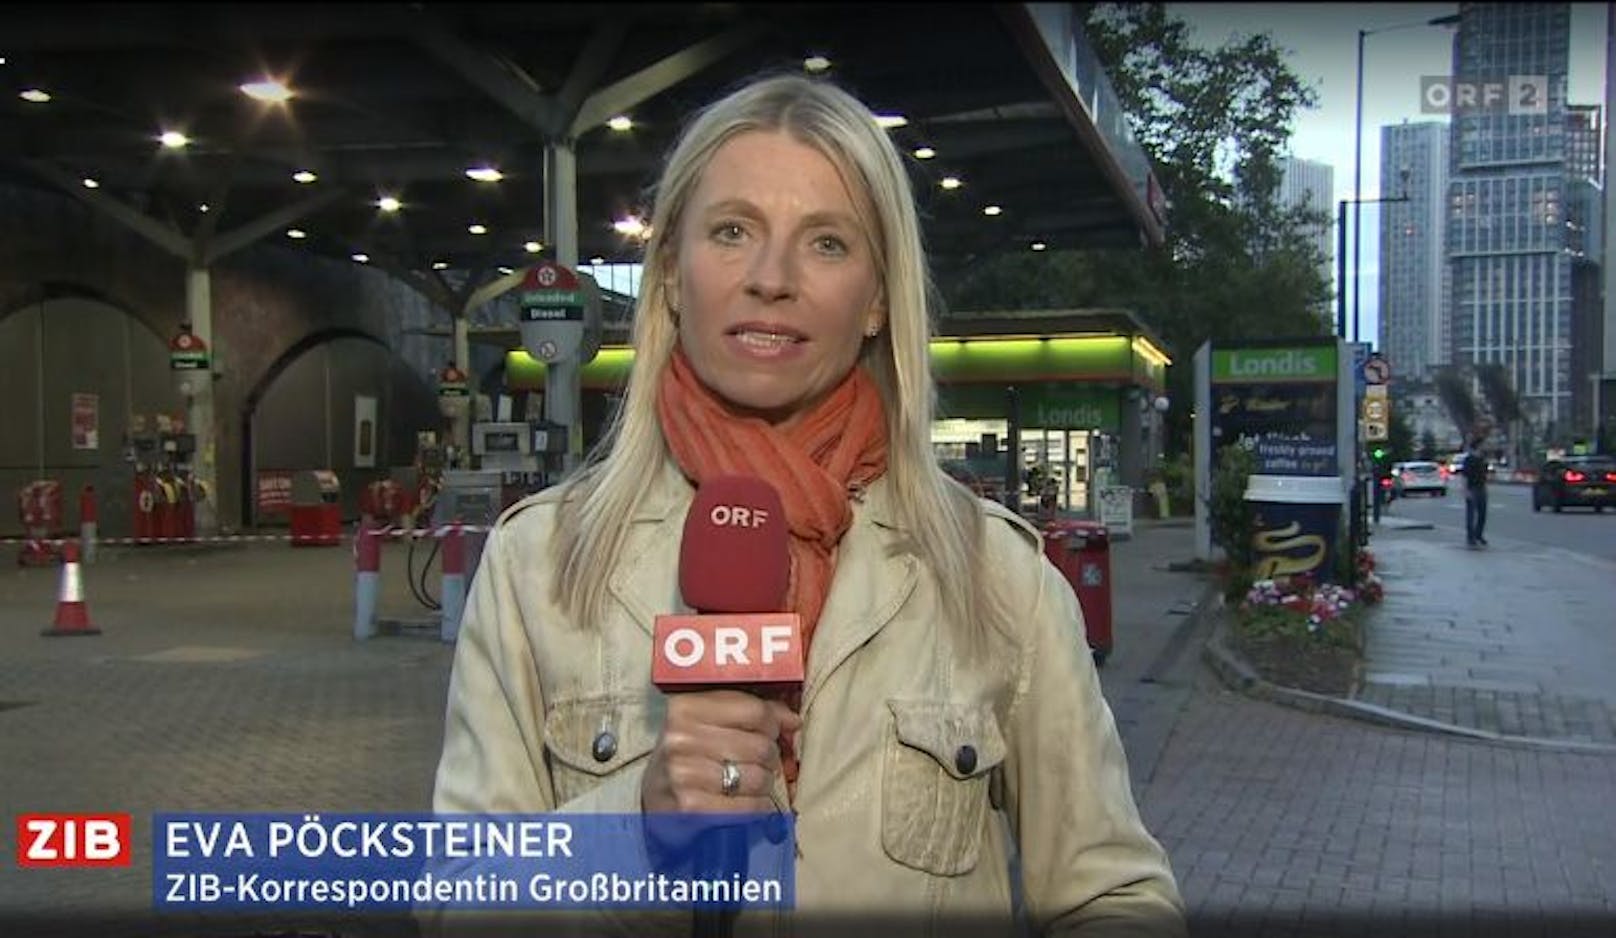 ZIB-Korrespondentin Eva Pöcksteiner live aus London